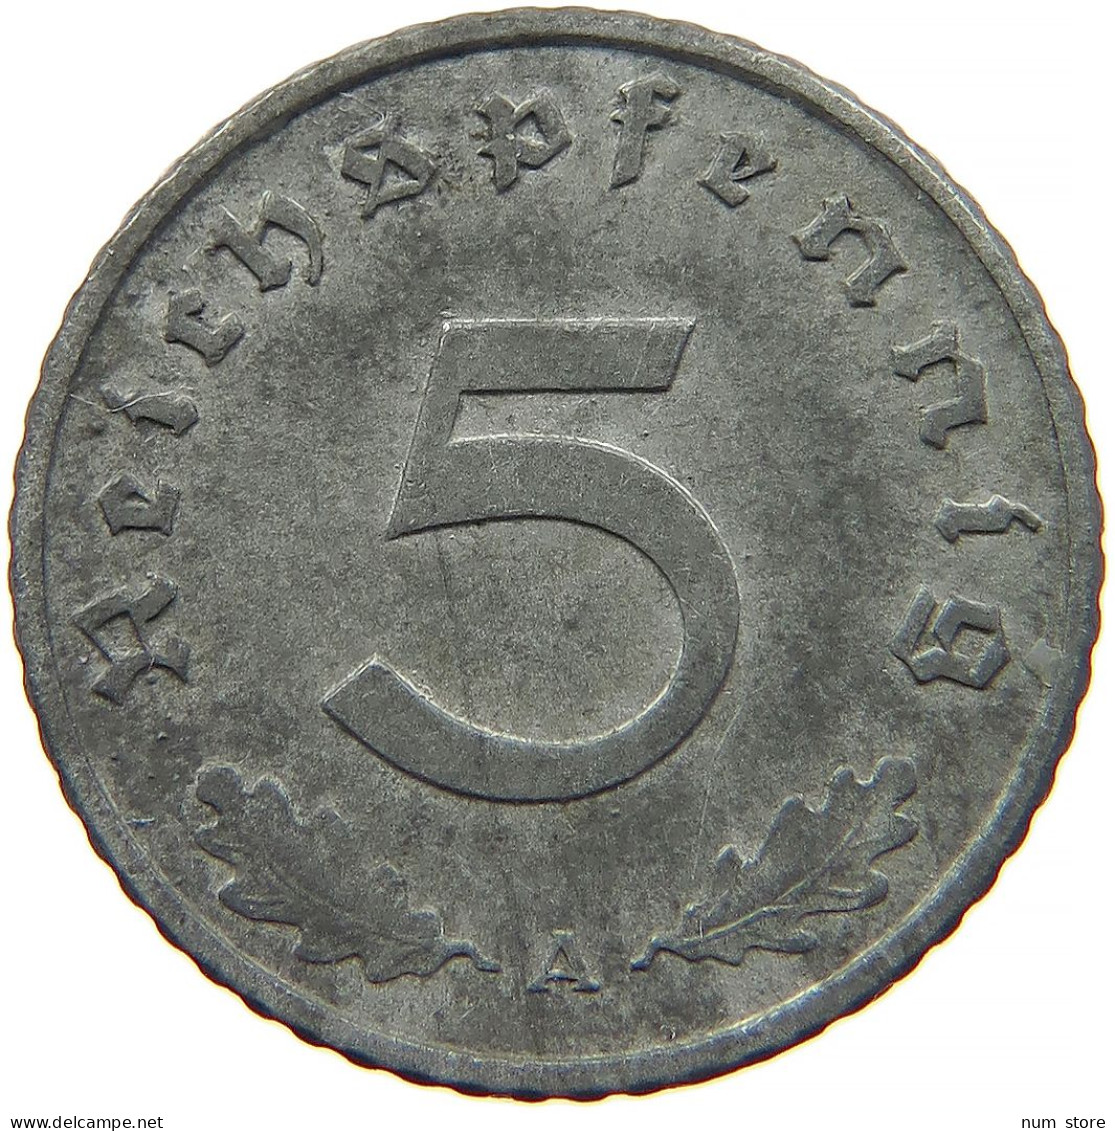 GERMANY 5 REICHSPFENNIG 1941 A #s091 0905 - 5 Reichspfennig